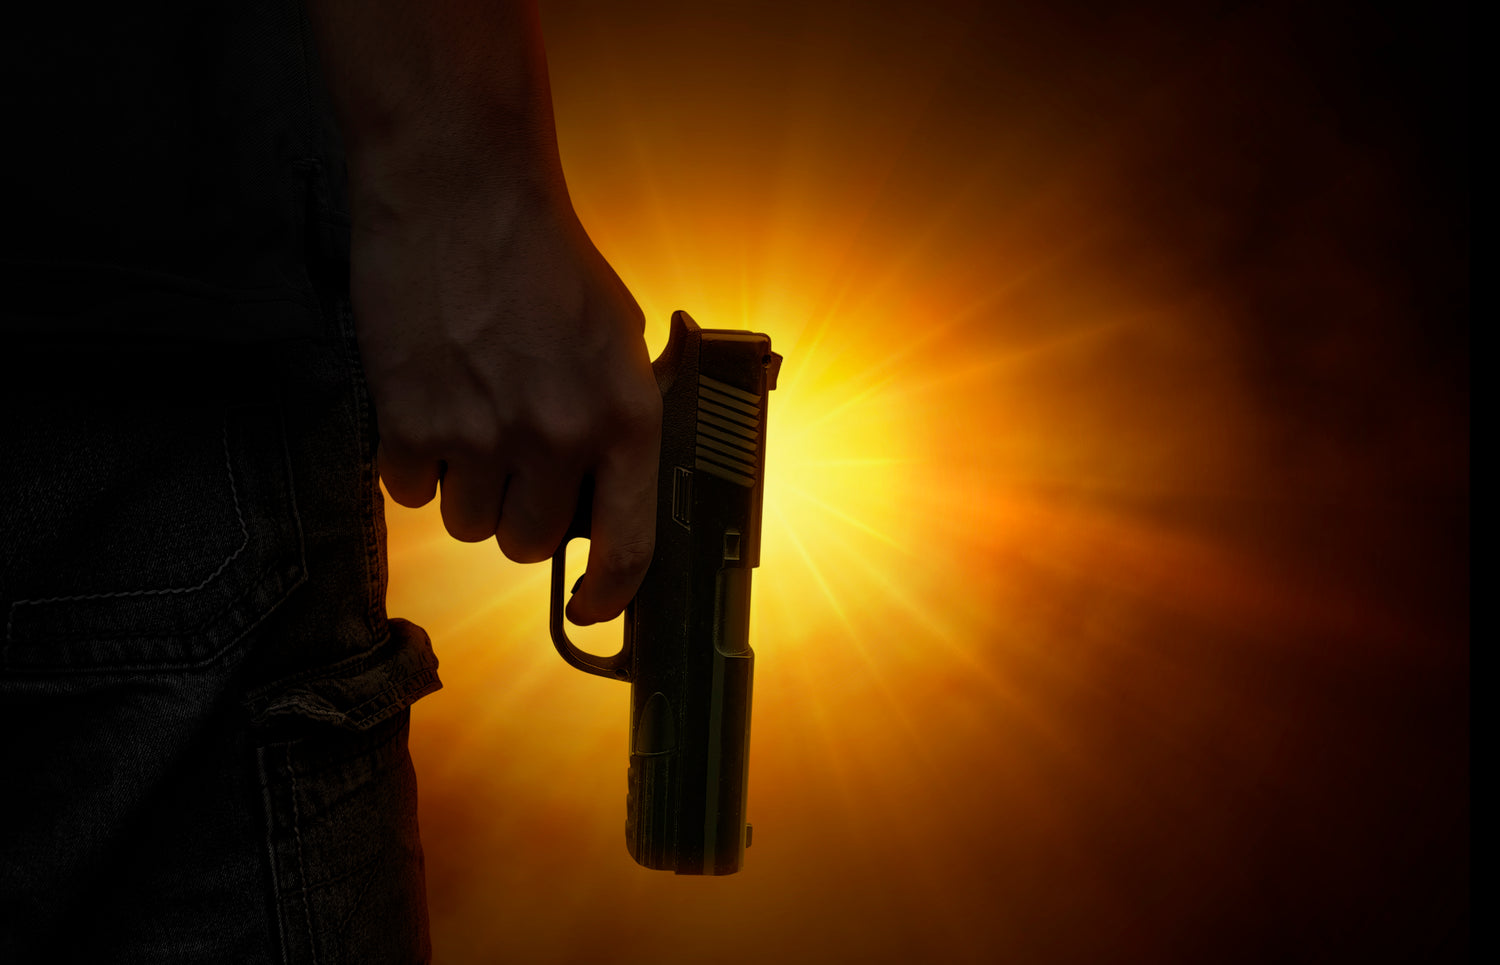 Holding pistol against the light